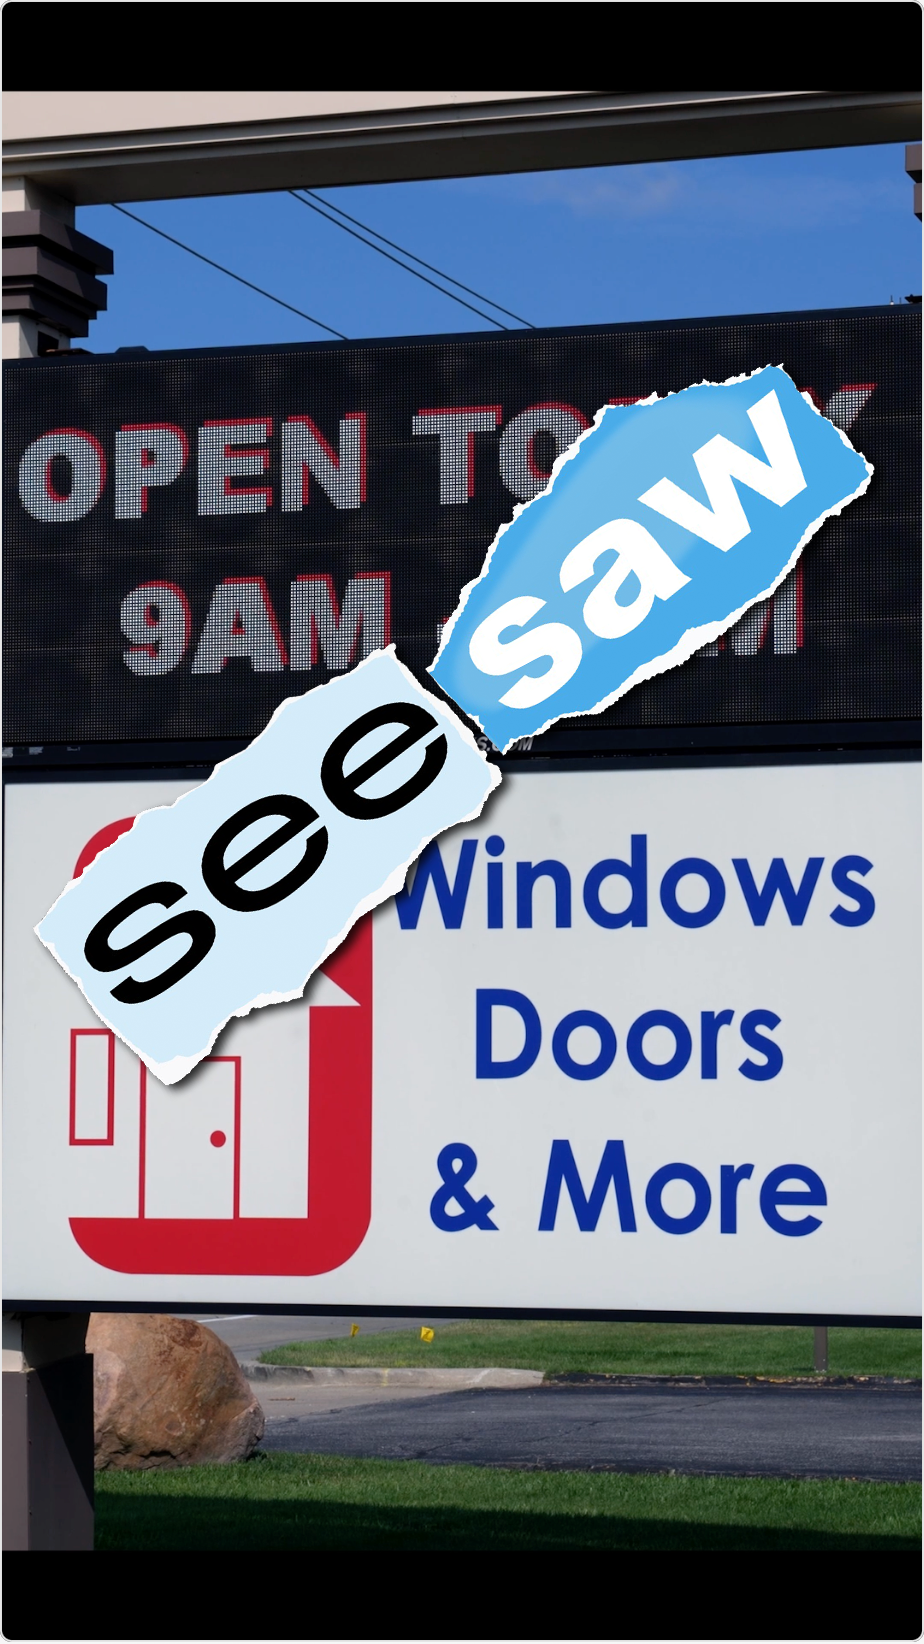 Windows, Doors & More SeeSaw